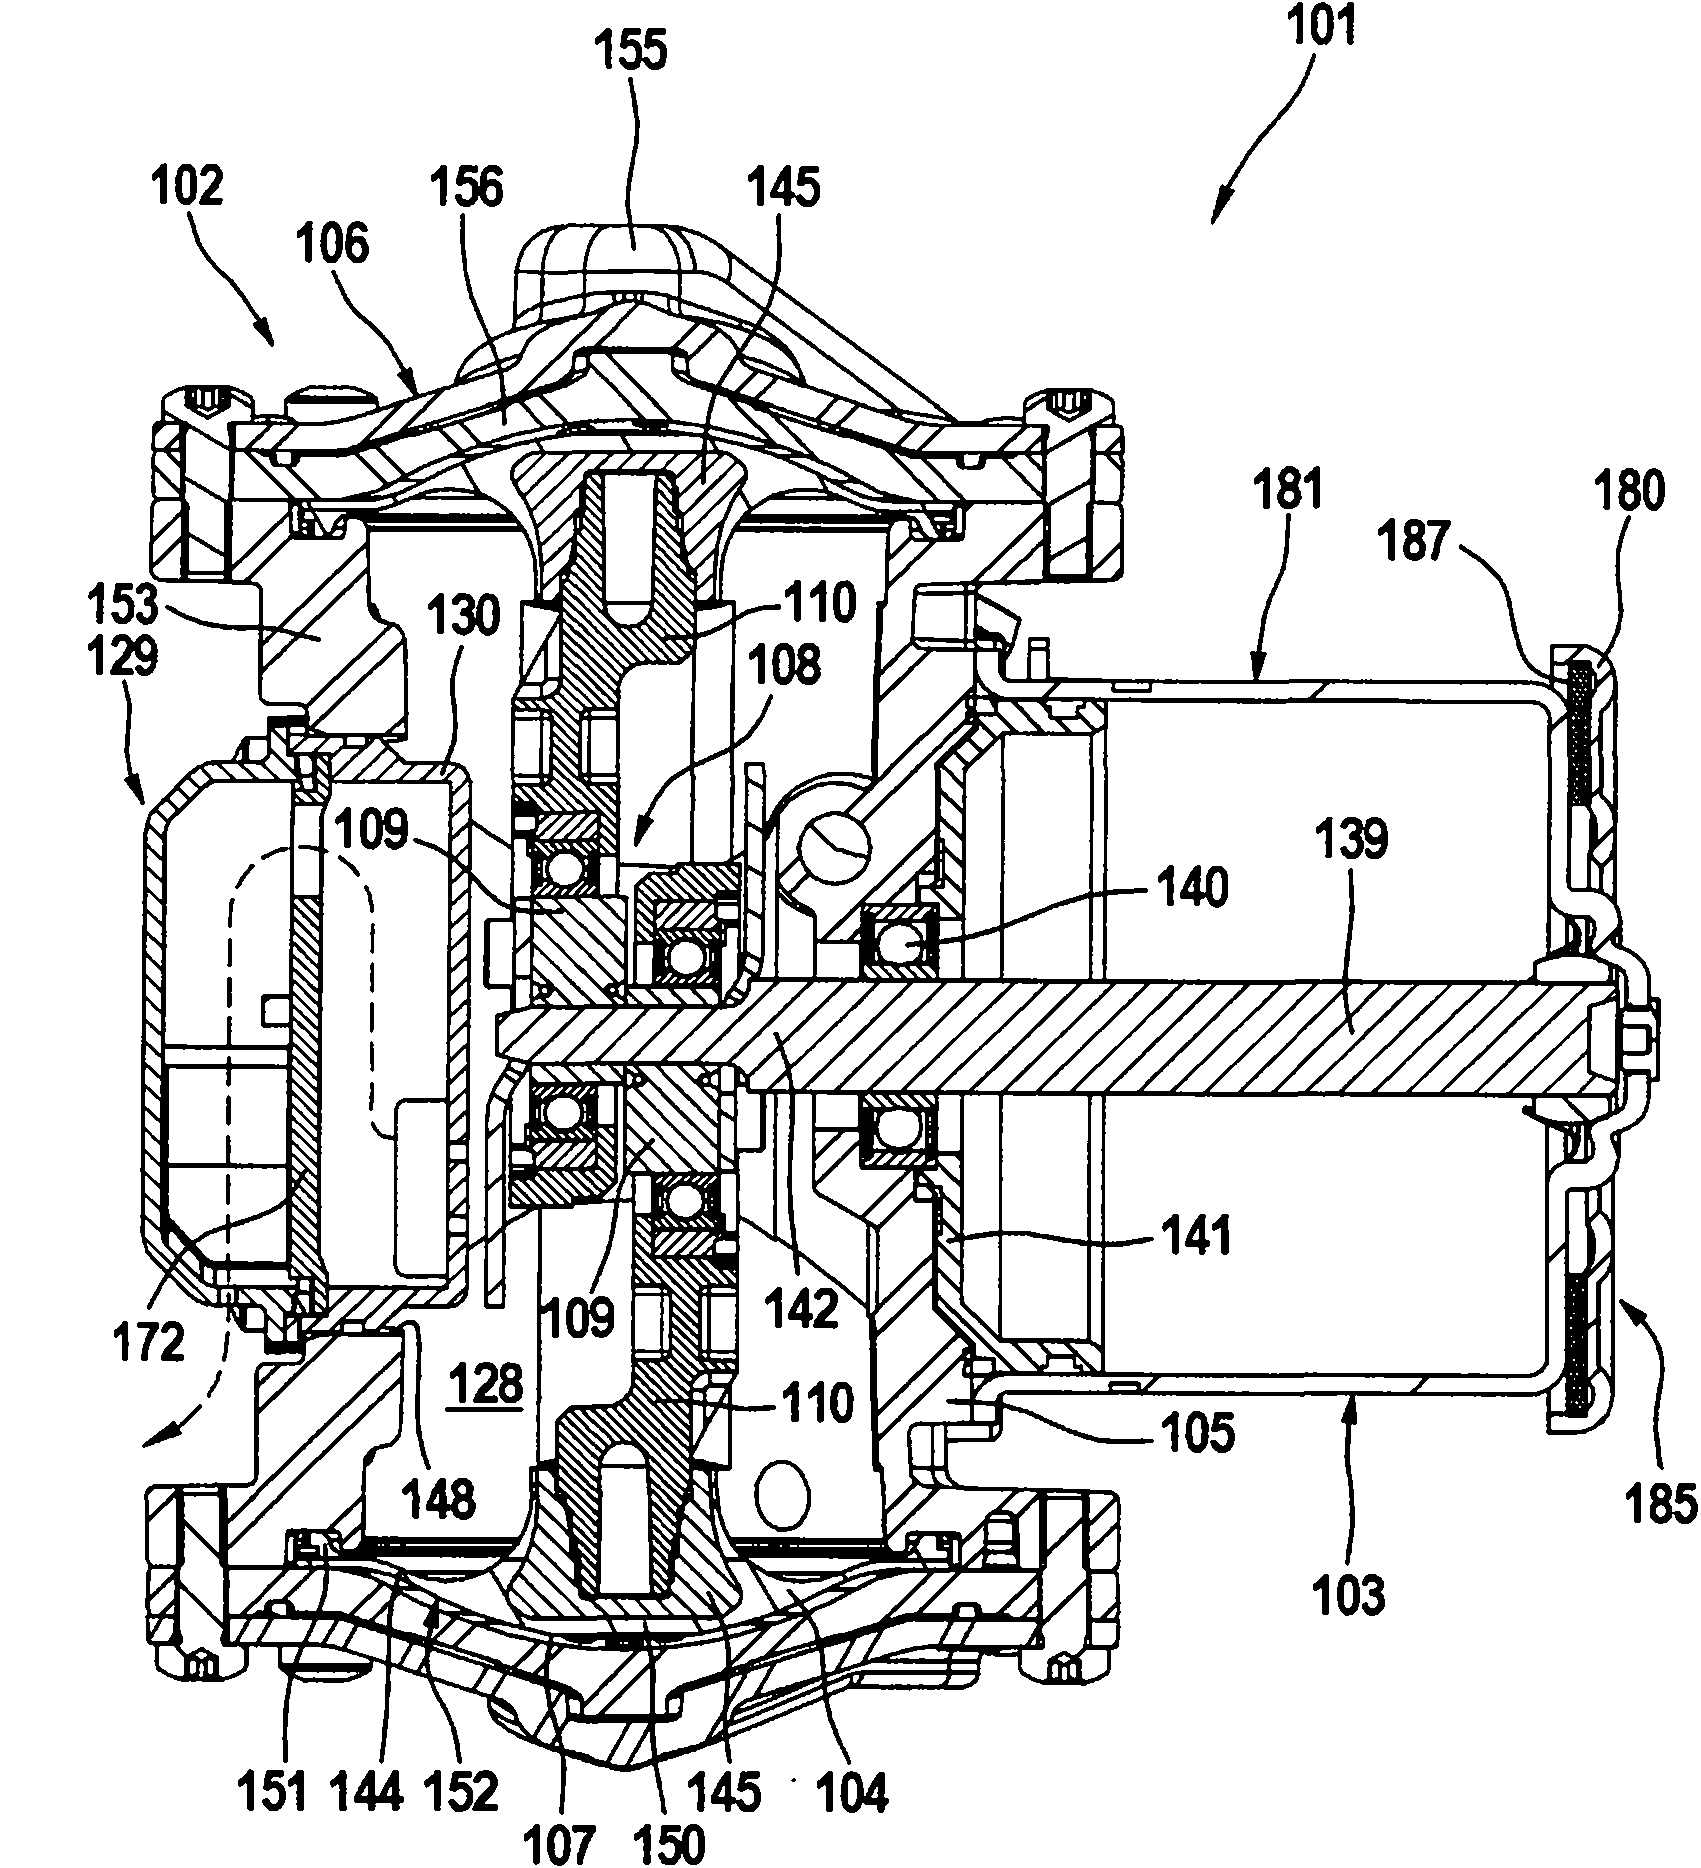 Motor-pump aggregate